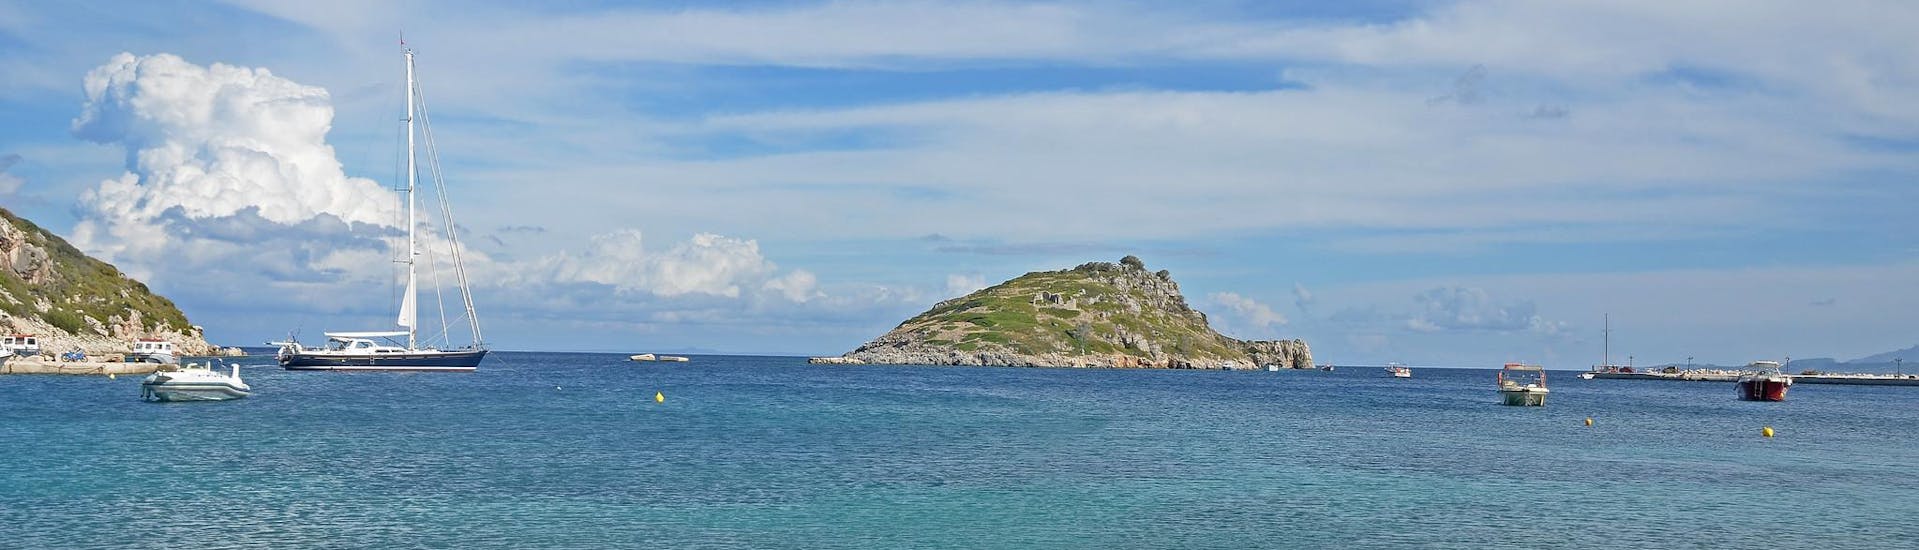 Le port d'Agios Nikolaos à Zante, point de départ des excursions en bateau dans les îles Ioniennes. 